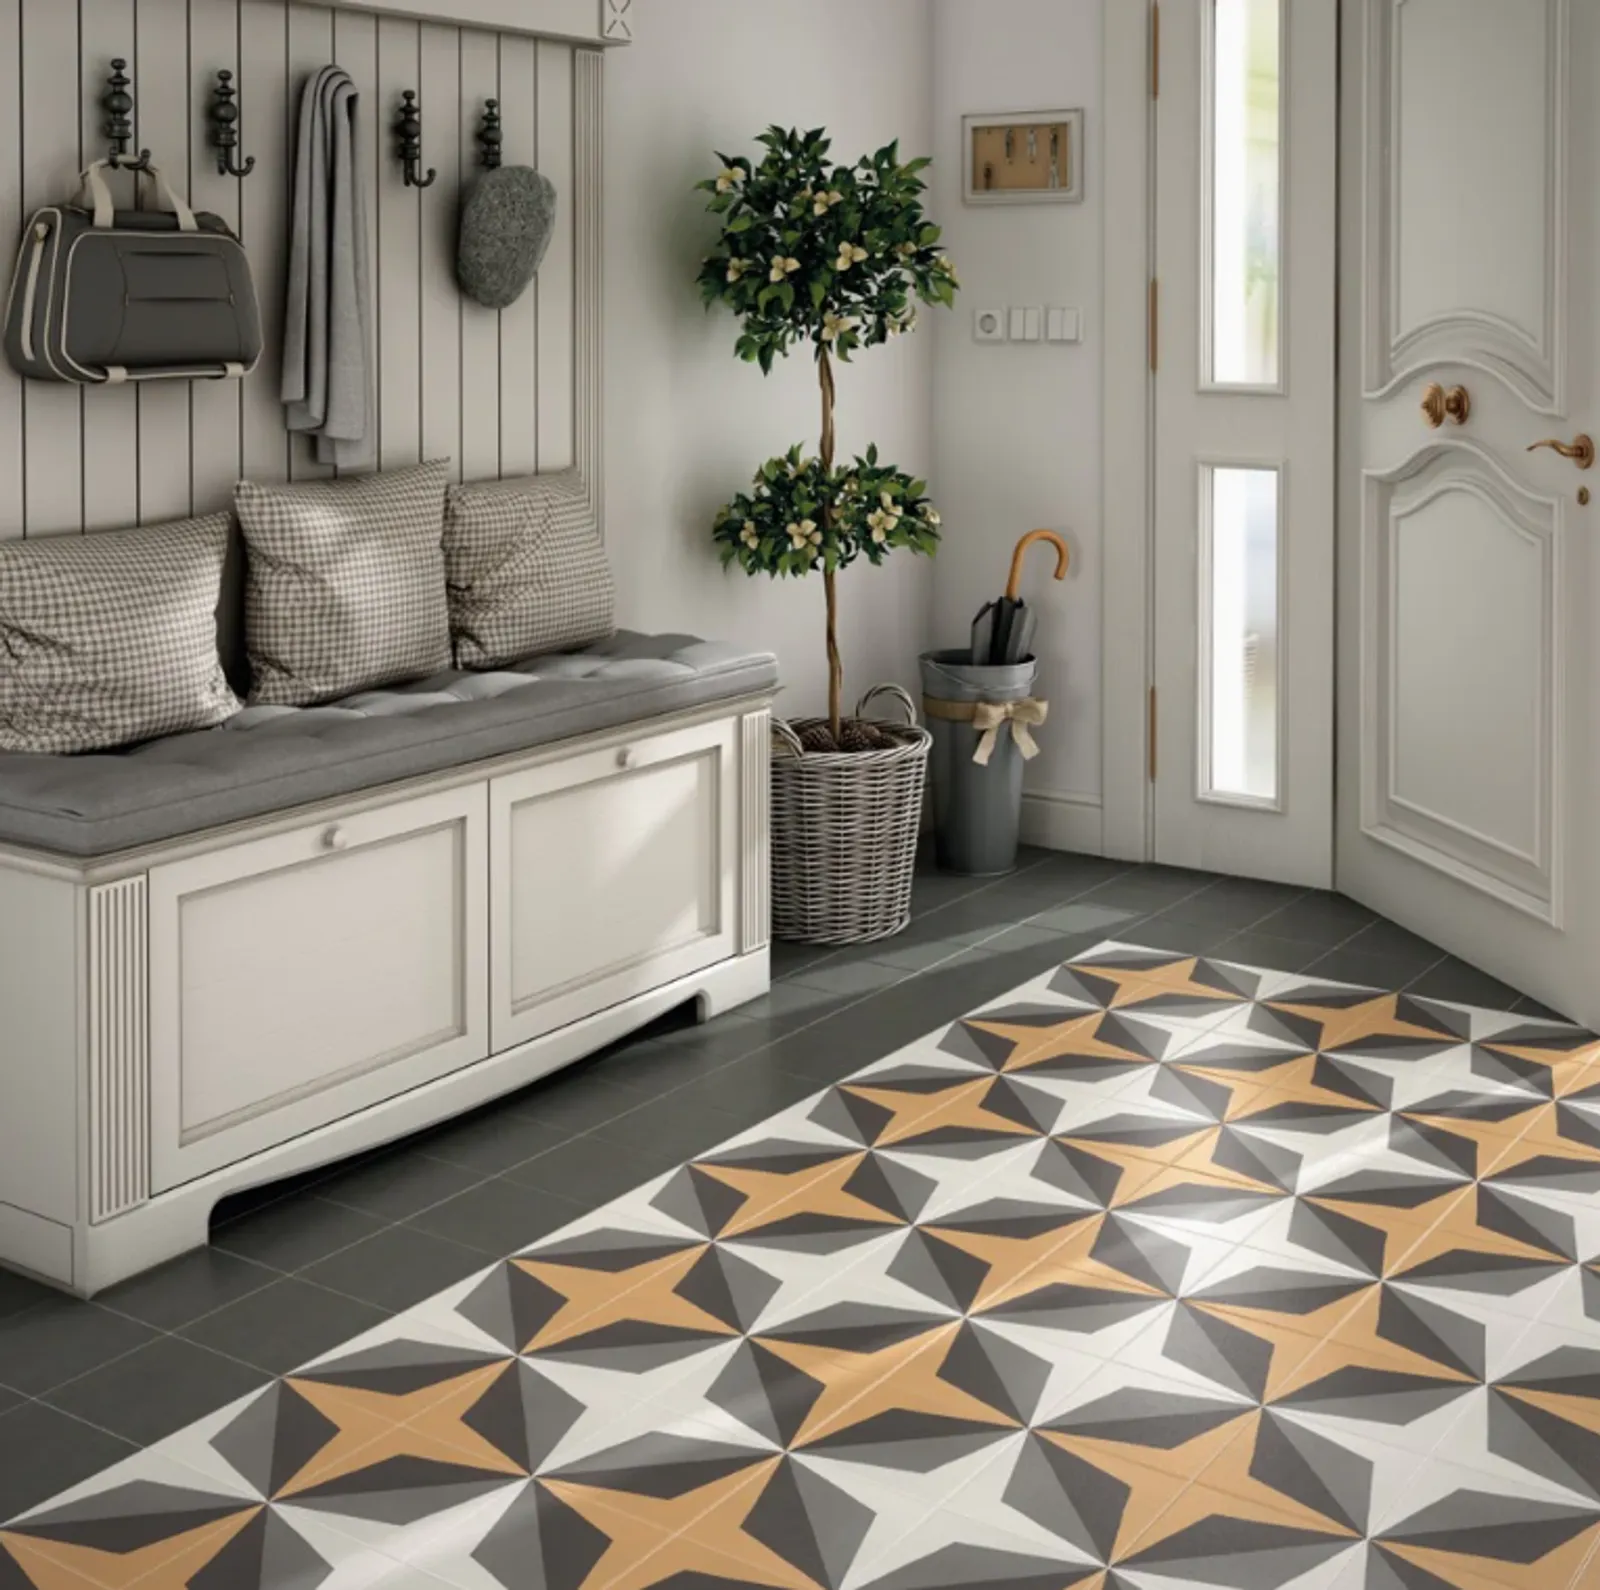 10 Warna Keramik Lantai yang Bagus untuk Rumah, Elegan!